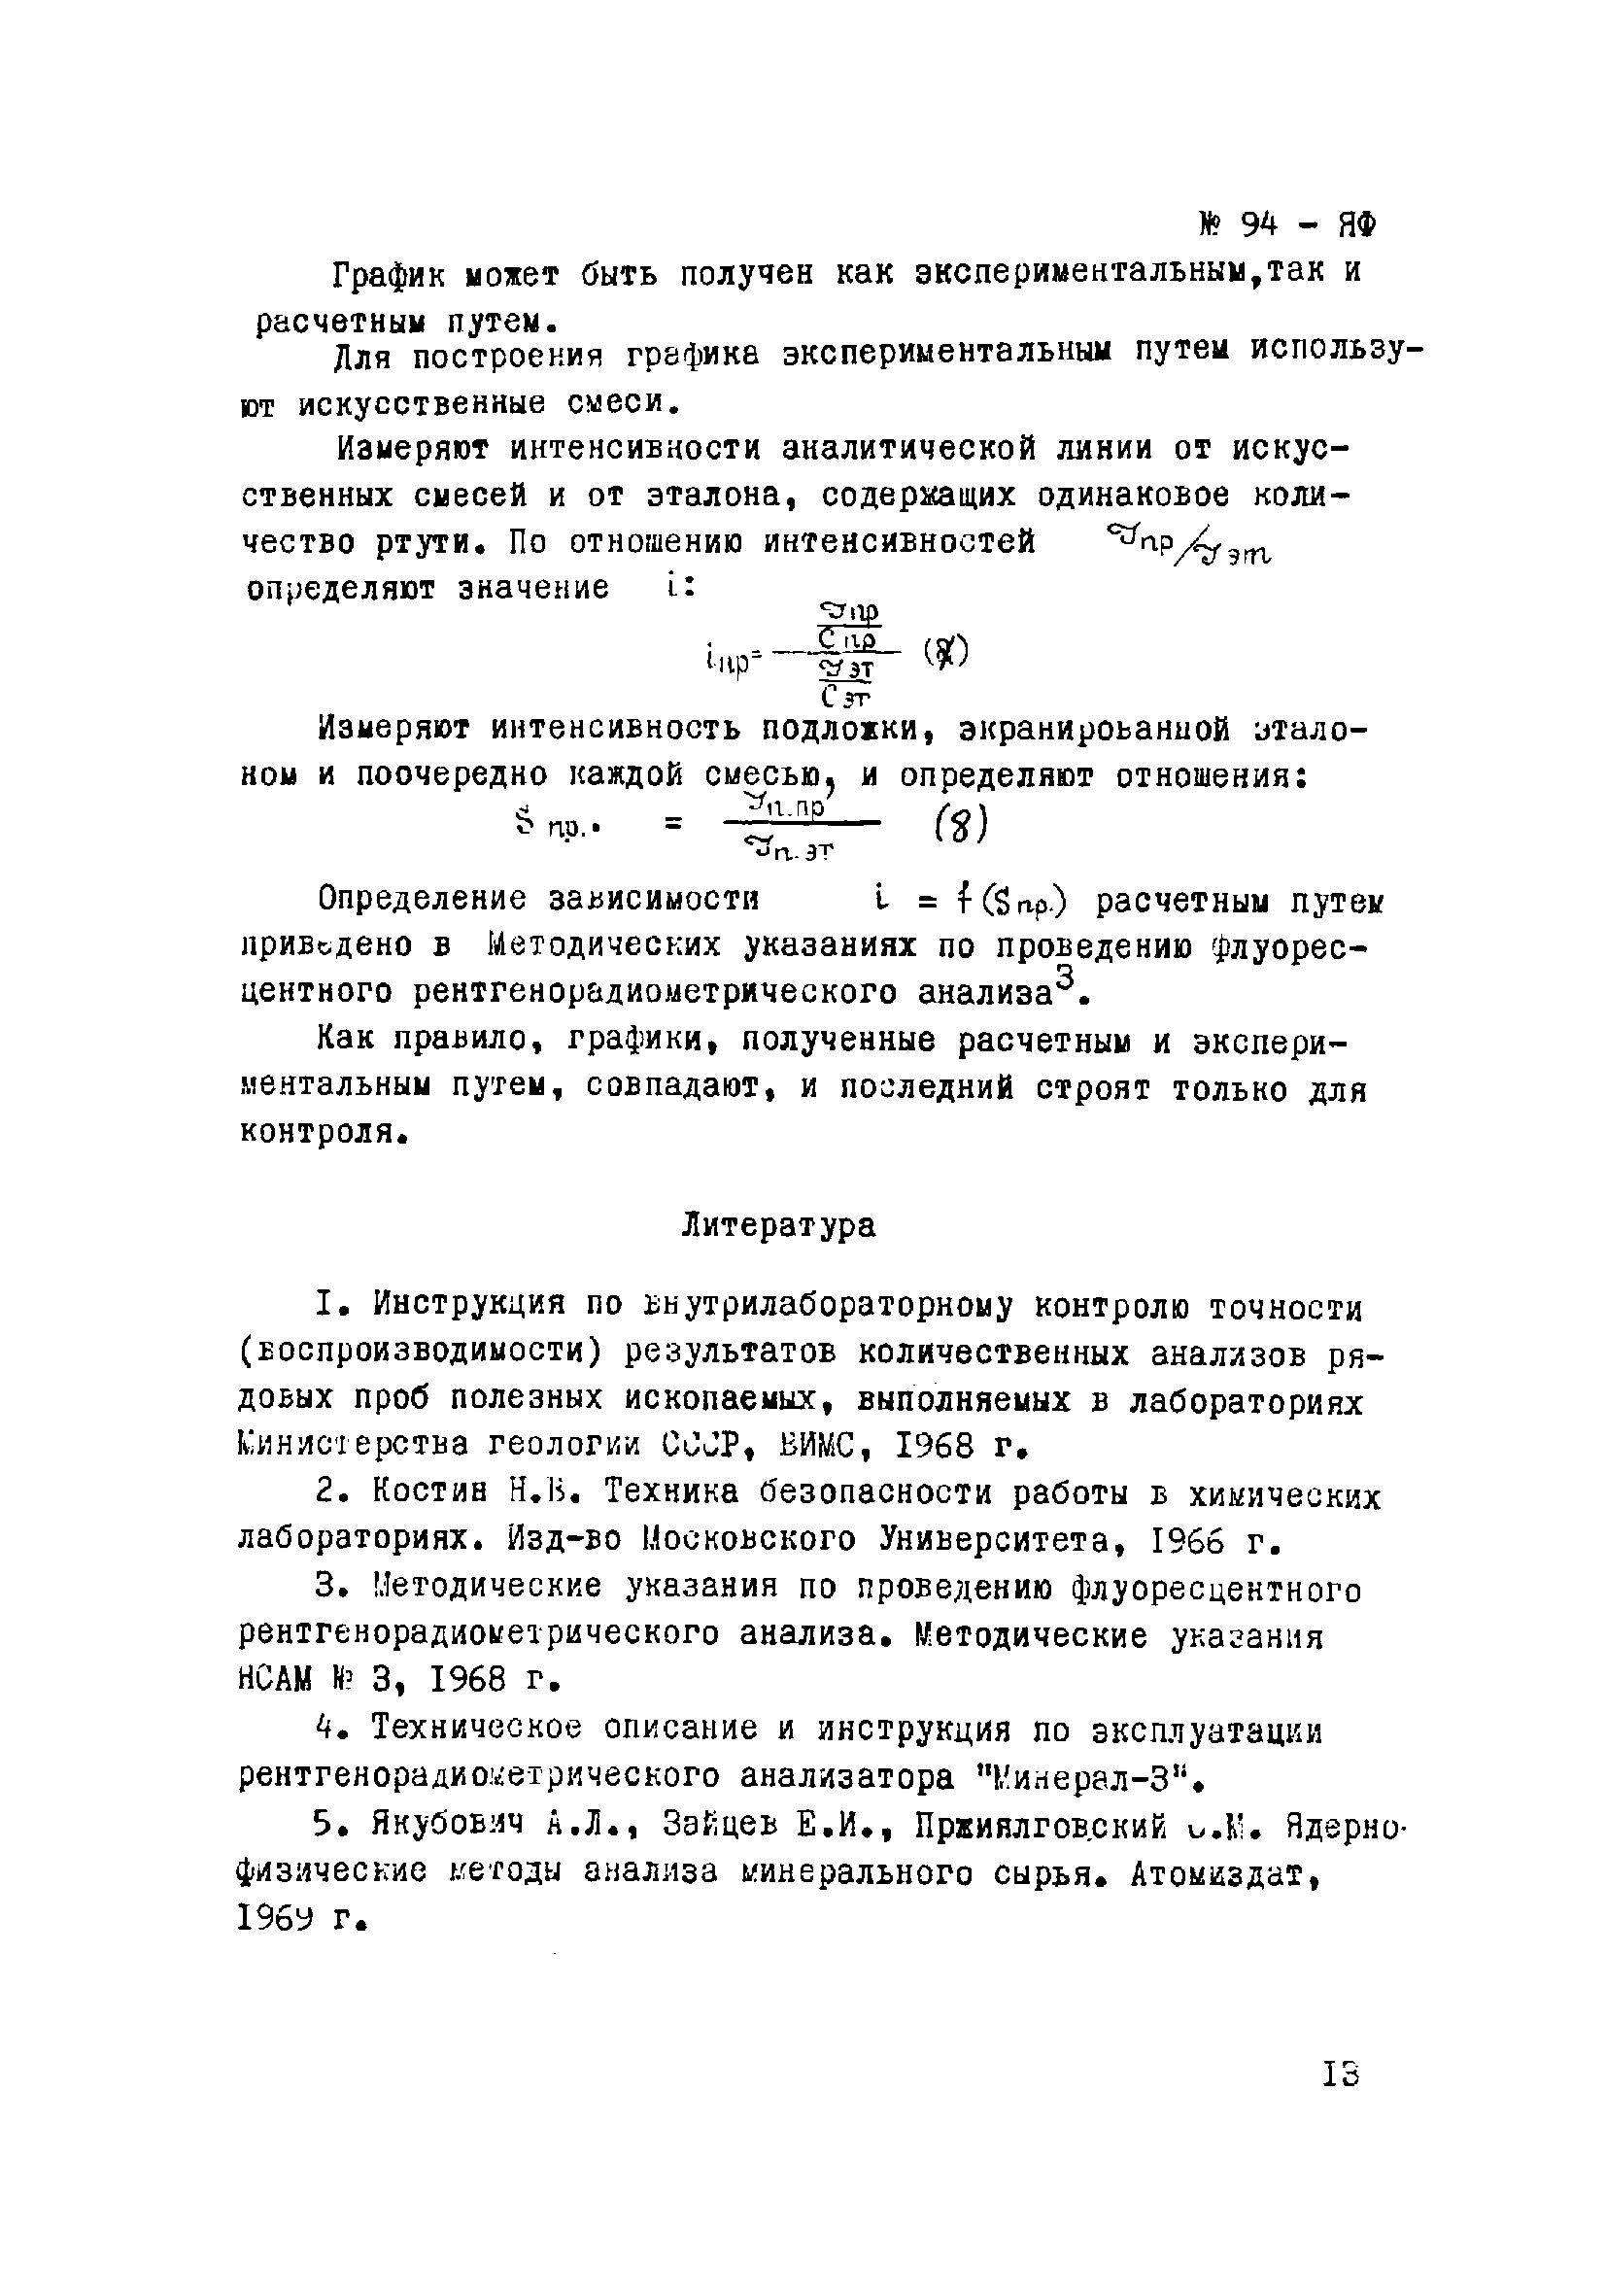 Инструкция НСАМ 94-ЯФ